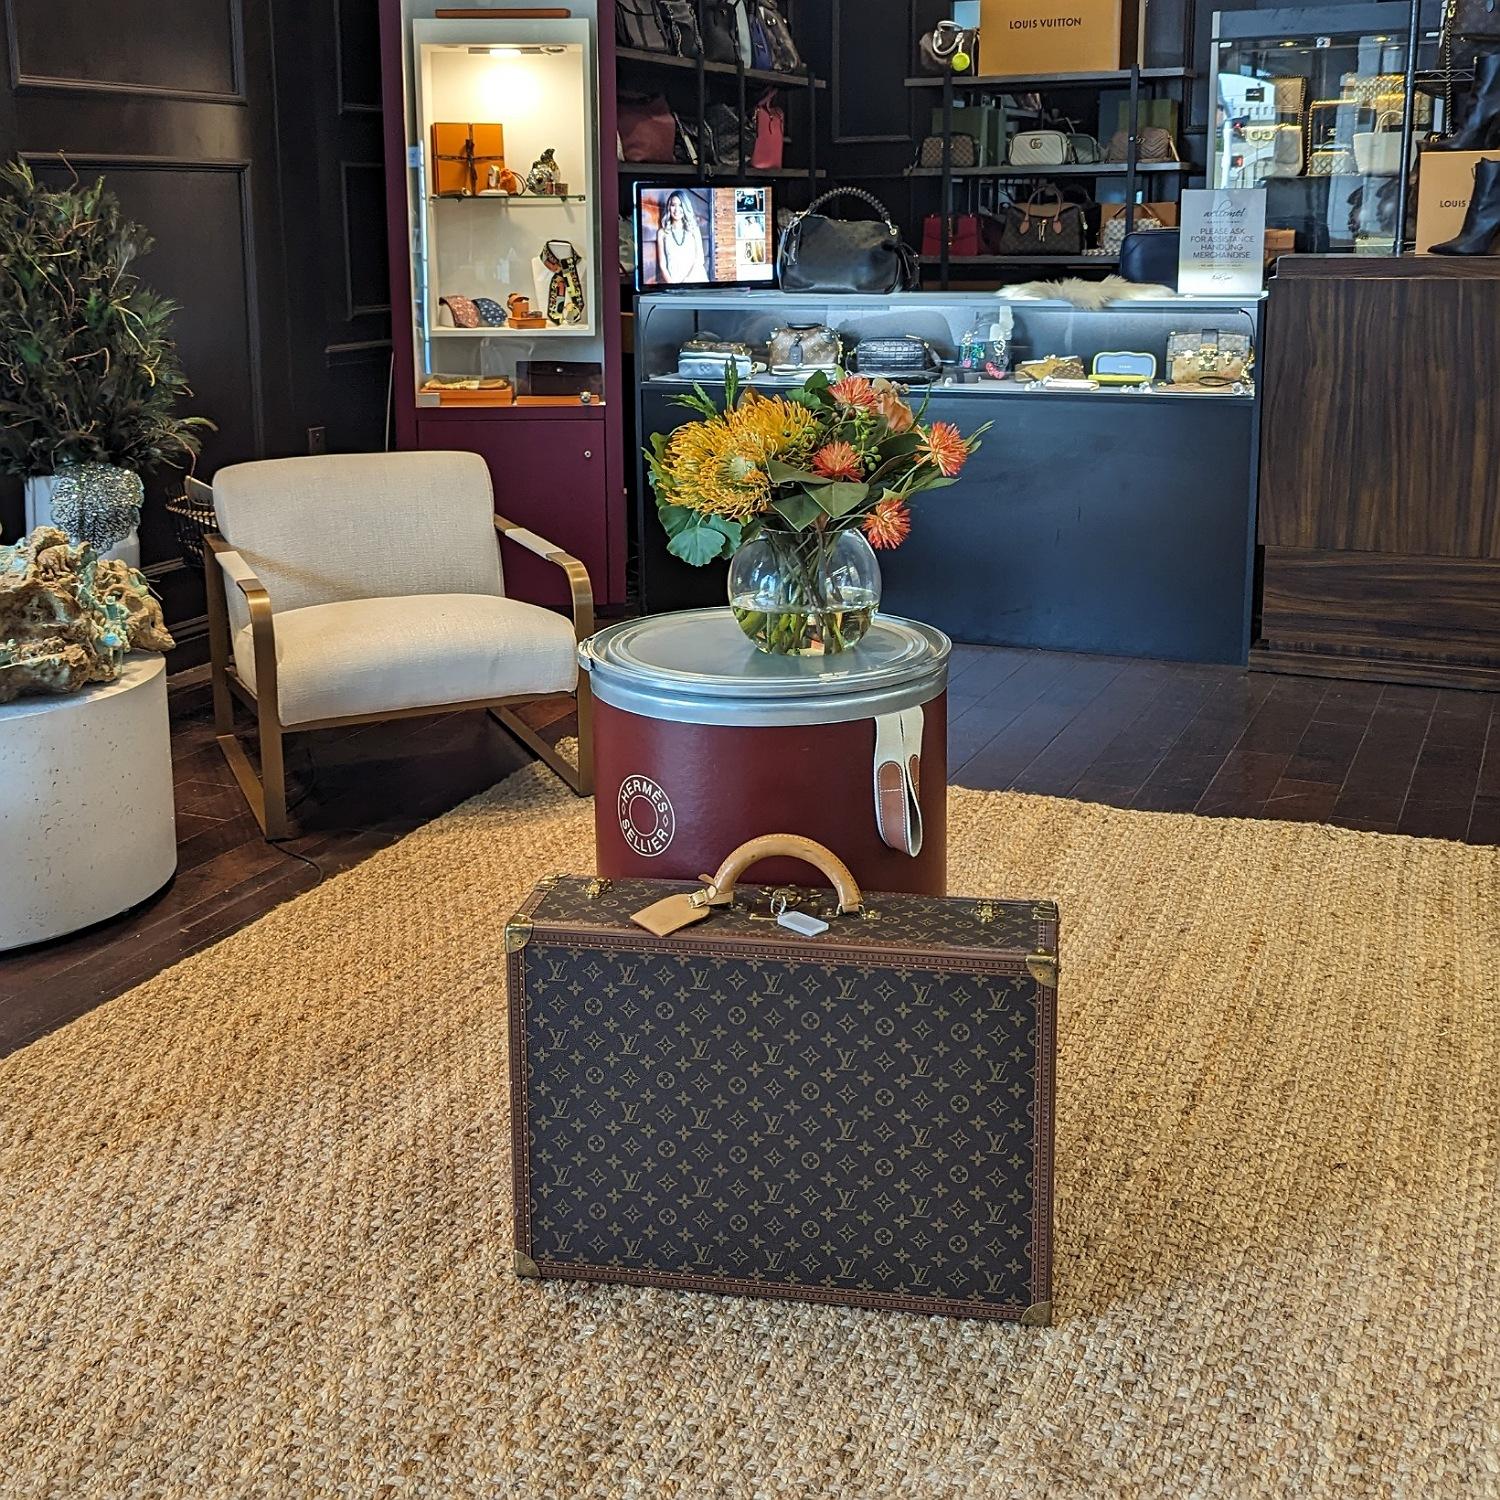 Cette valise rigide classique est finement travaillée avec le traditionnel monogramme Louis Vuitton sur toile. La mallette est ornée d'une garniture en cuir couleur caramel et d'une poignée supérieure renforcée en cuir vachette avec rivets et